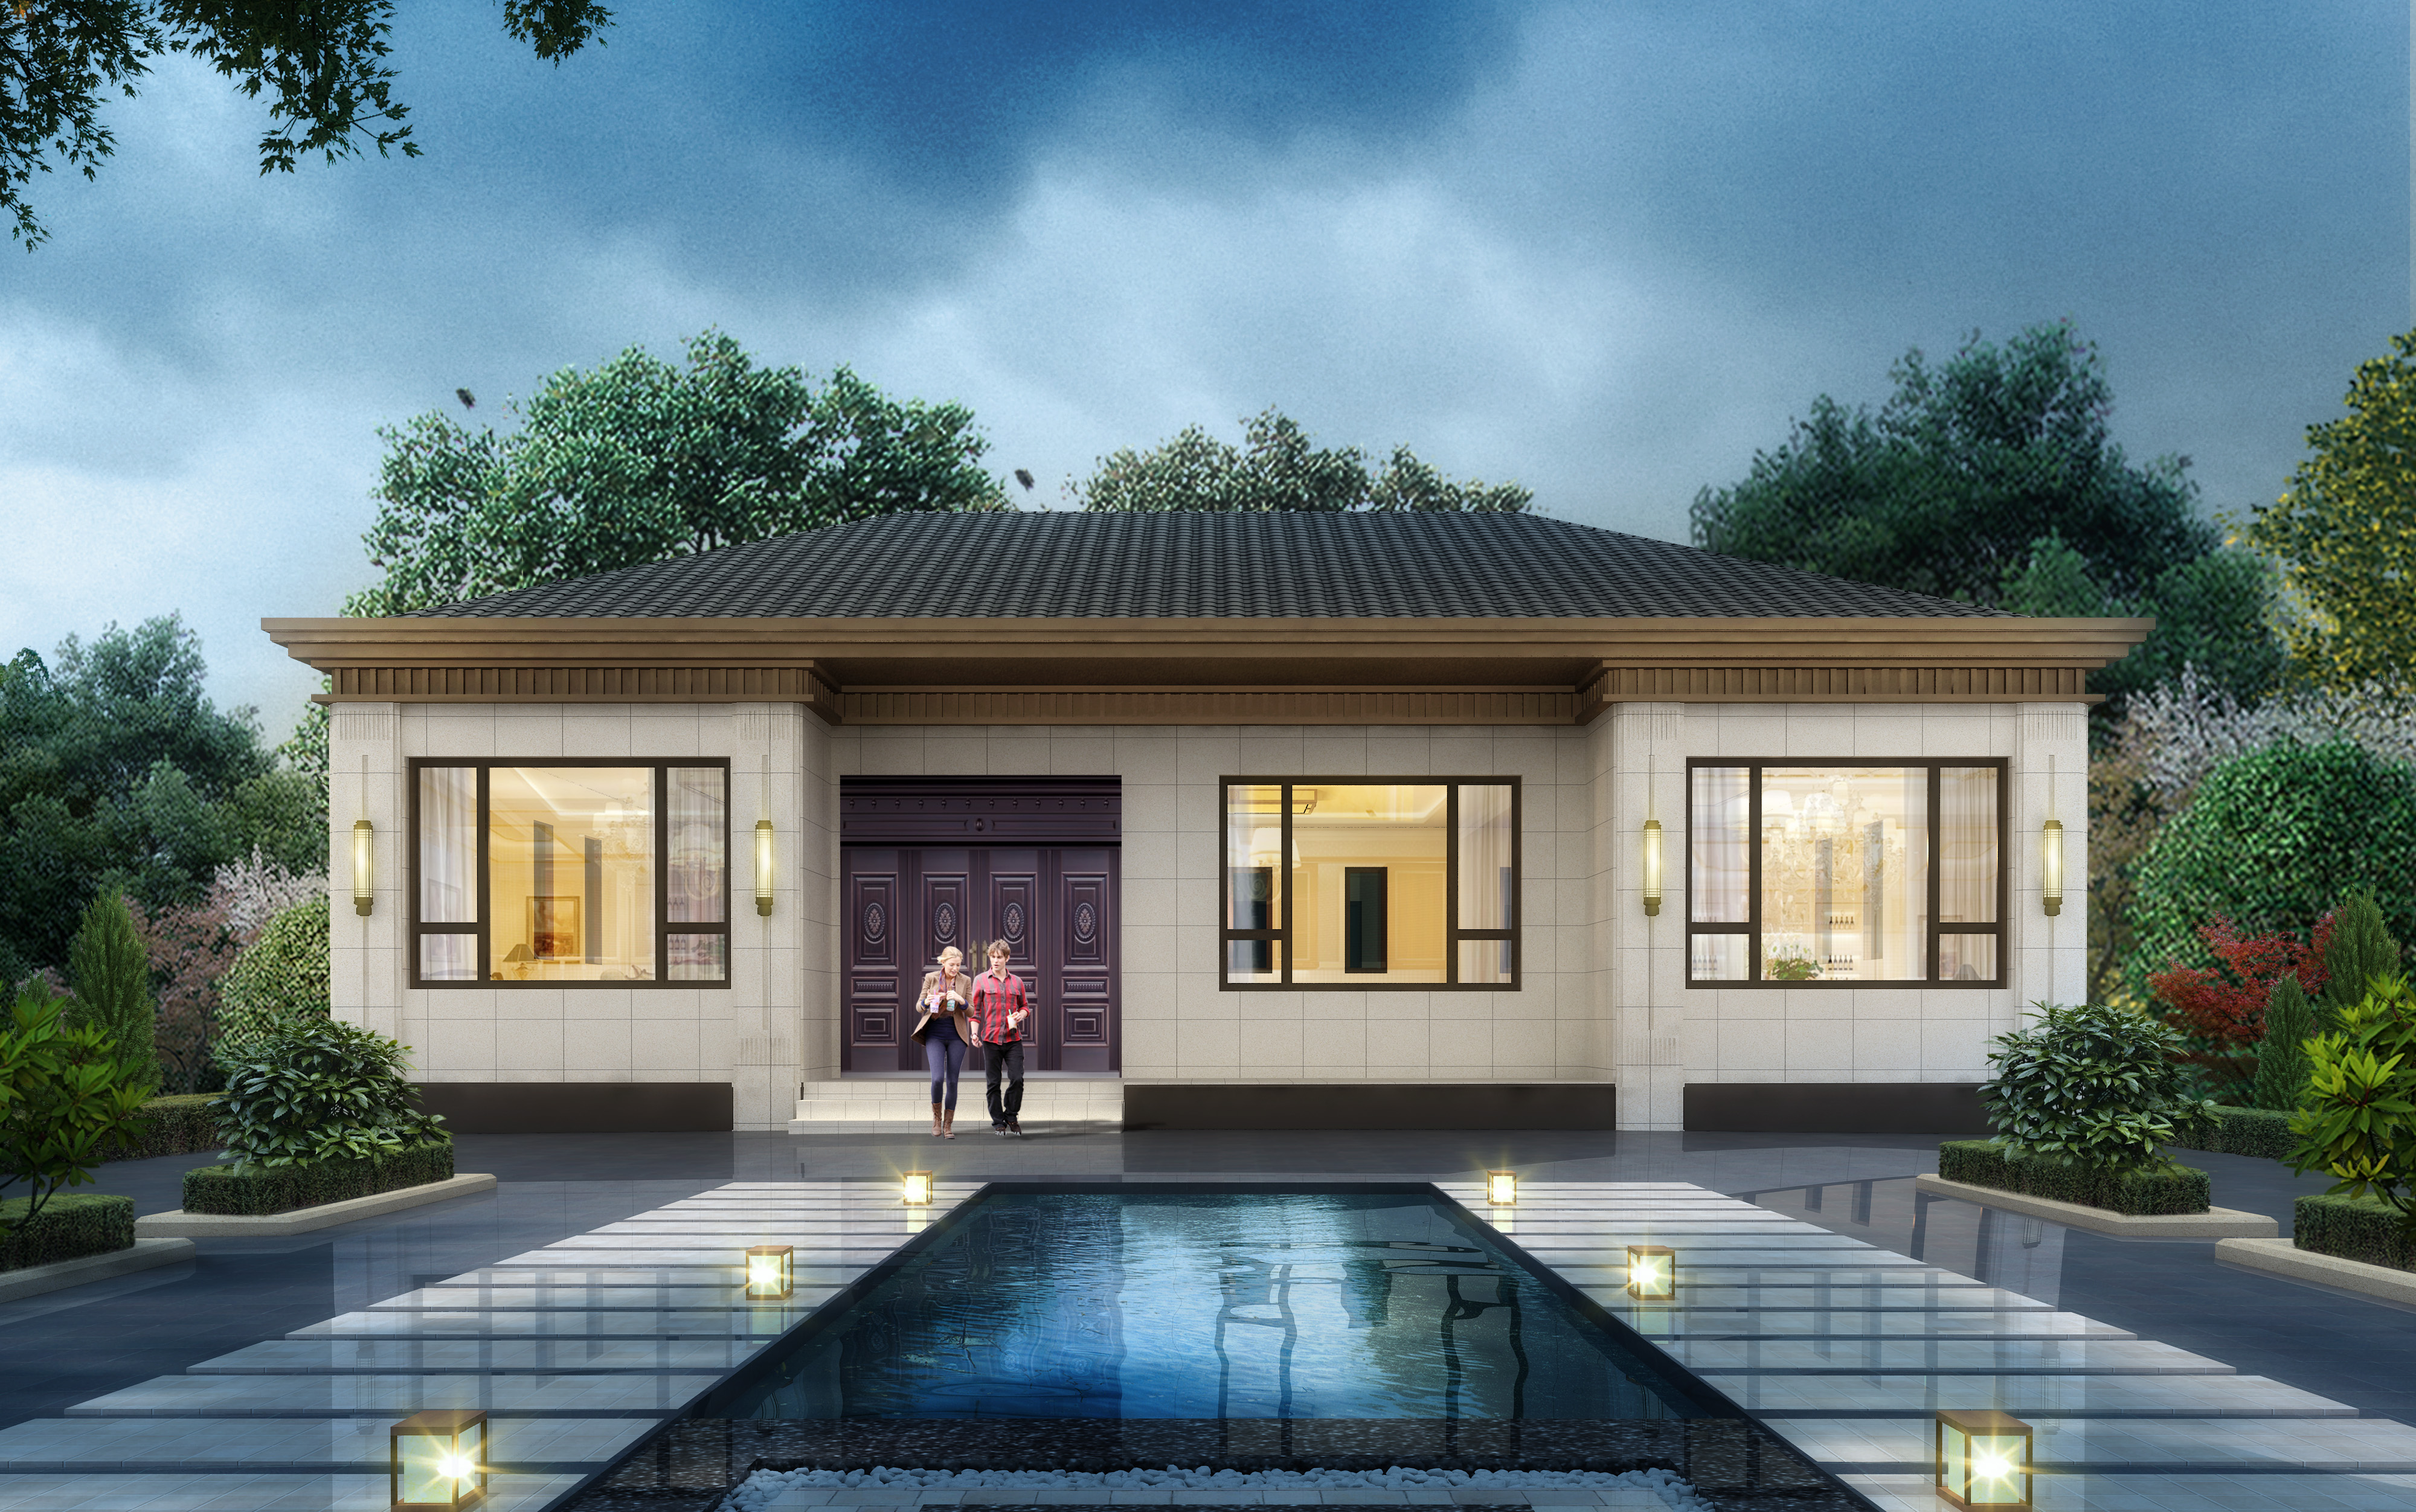 新中式简单大气一层别墅设计图农村自建房图纸经典户型房屋造价低